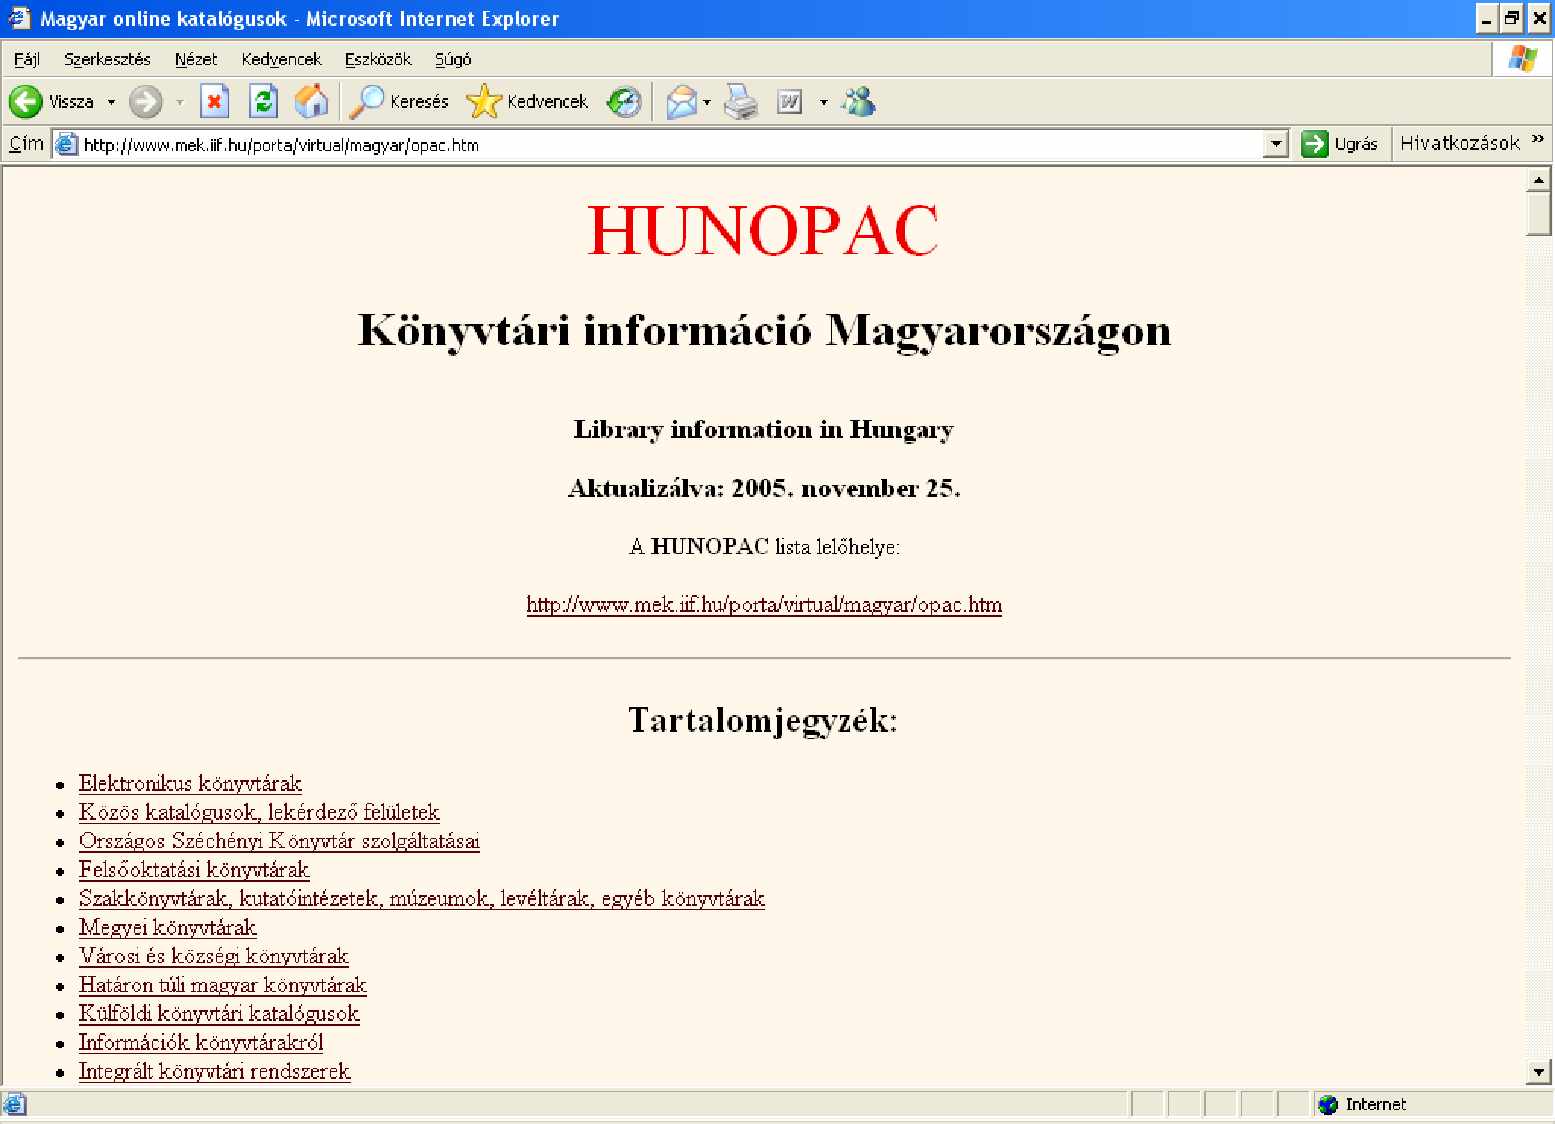 HUNOPAC A HUNOPAC nev központi szolgáltatás a Széchényi Könyvtárban készül könyvtárosok és olvasók számára egyaránt. A http://www.mek.iif.hu/porta/virtual/magyar/opac.htm címen érhet el.